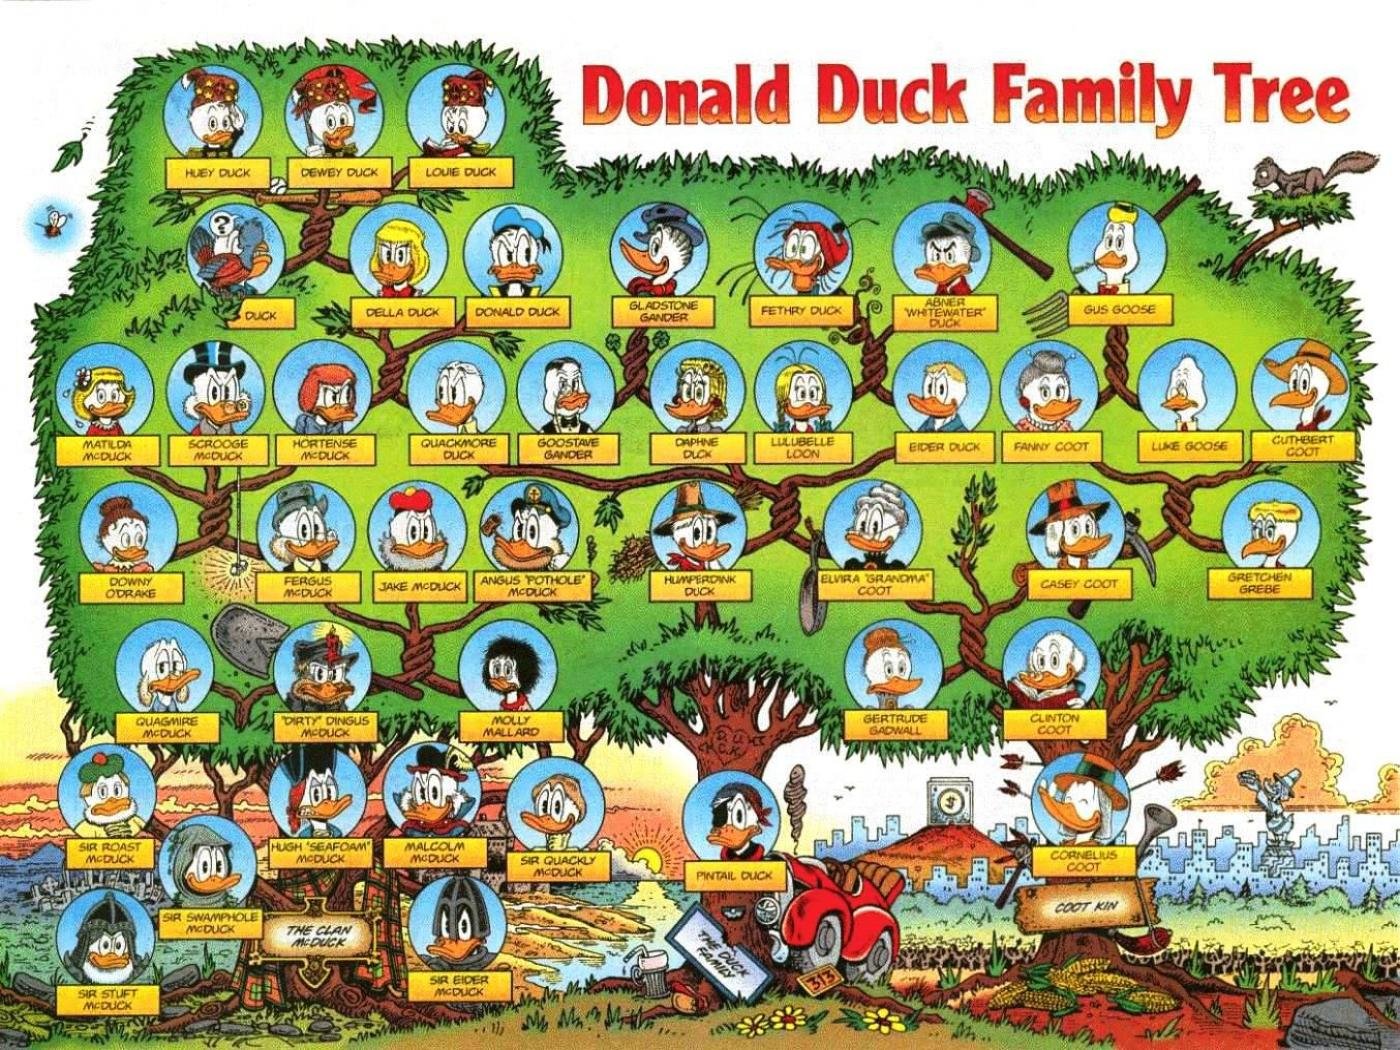 donald duck wallpapers for desktop